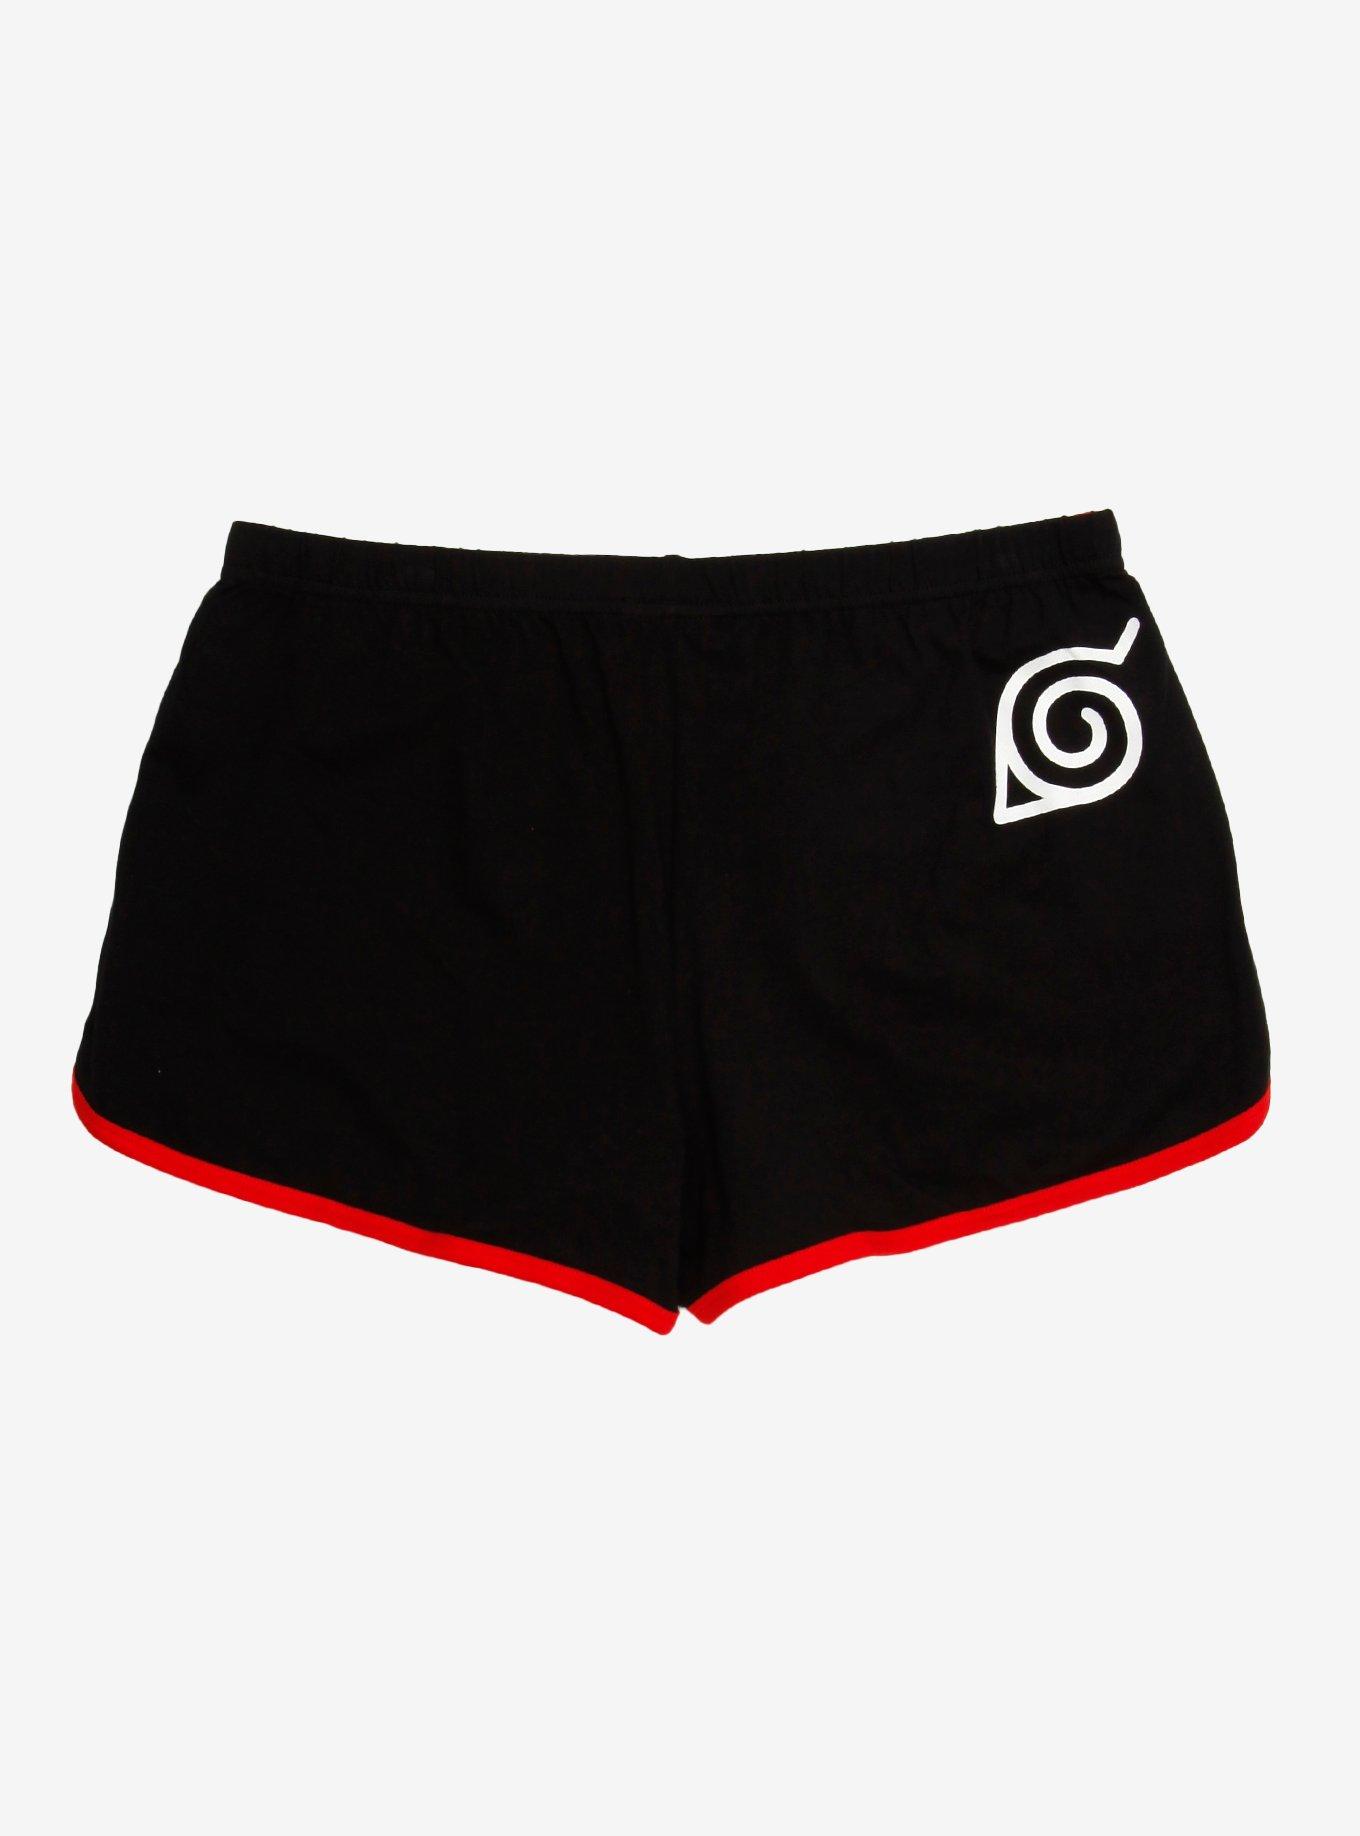 Naruto Shippuden Ichiraku Ramen Girls Soft Shorts, BLACK, alternate